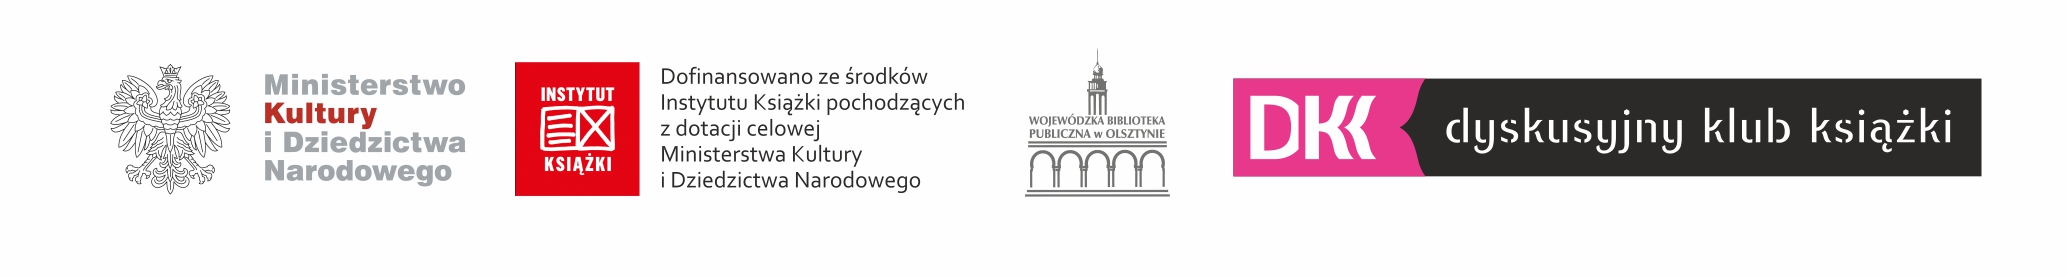 Logotypy: Ministerstwo Kultury i Dziedzictwa Narodowego, Instytut Książki - Dofinansowano ze środków Instytutu Książki pochodzących z dotacji celowej MKiDN, Wojewódzka Biblioteka Publiczna w Olsztynie, Dyskusyjny Klub Książki